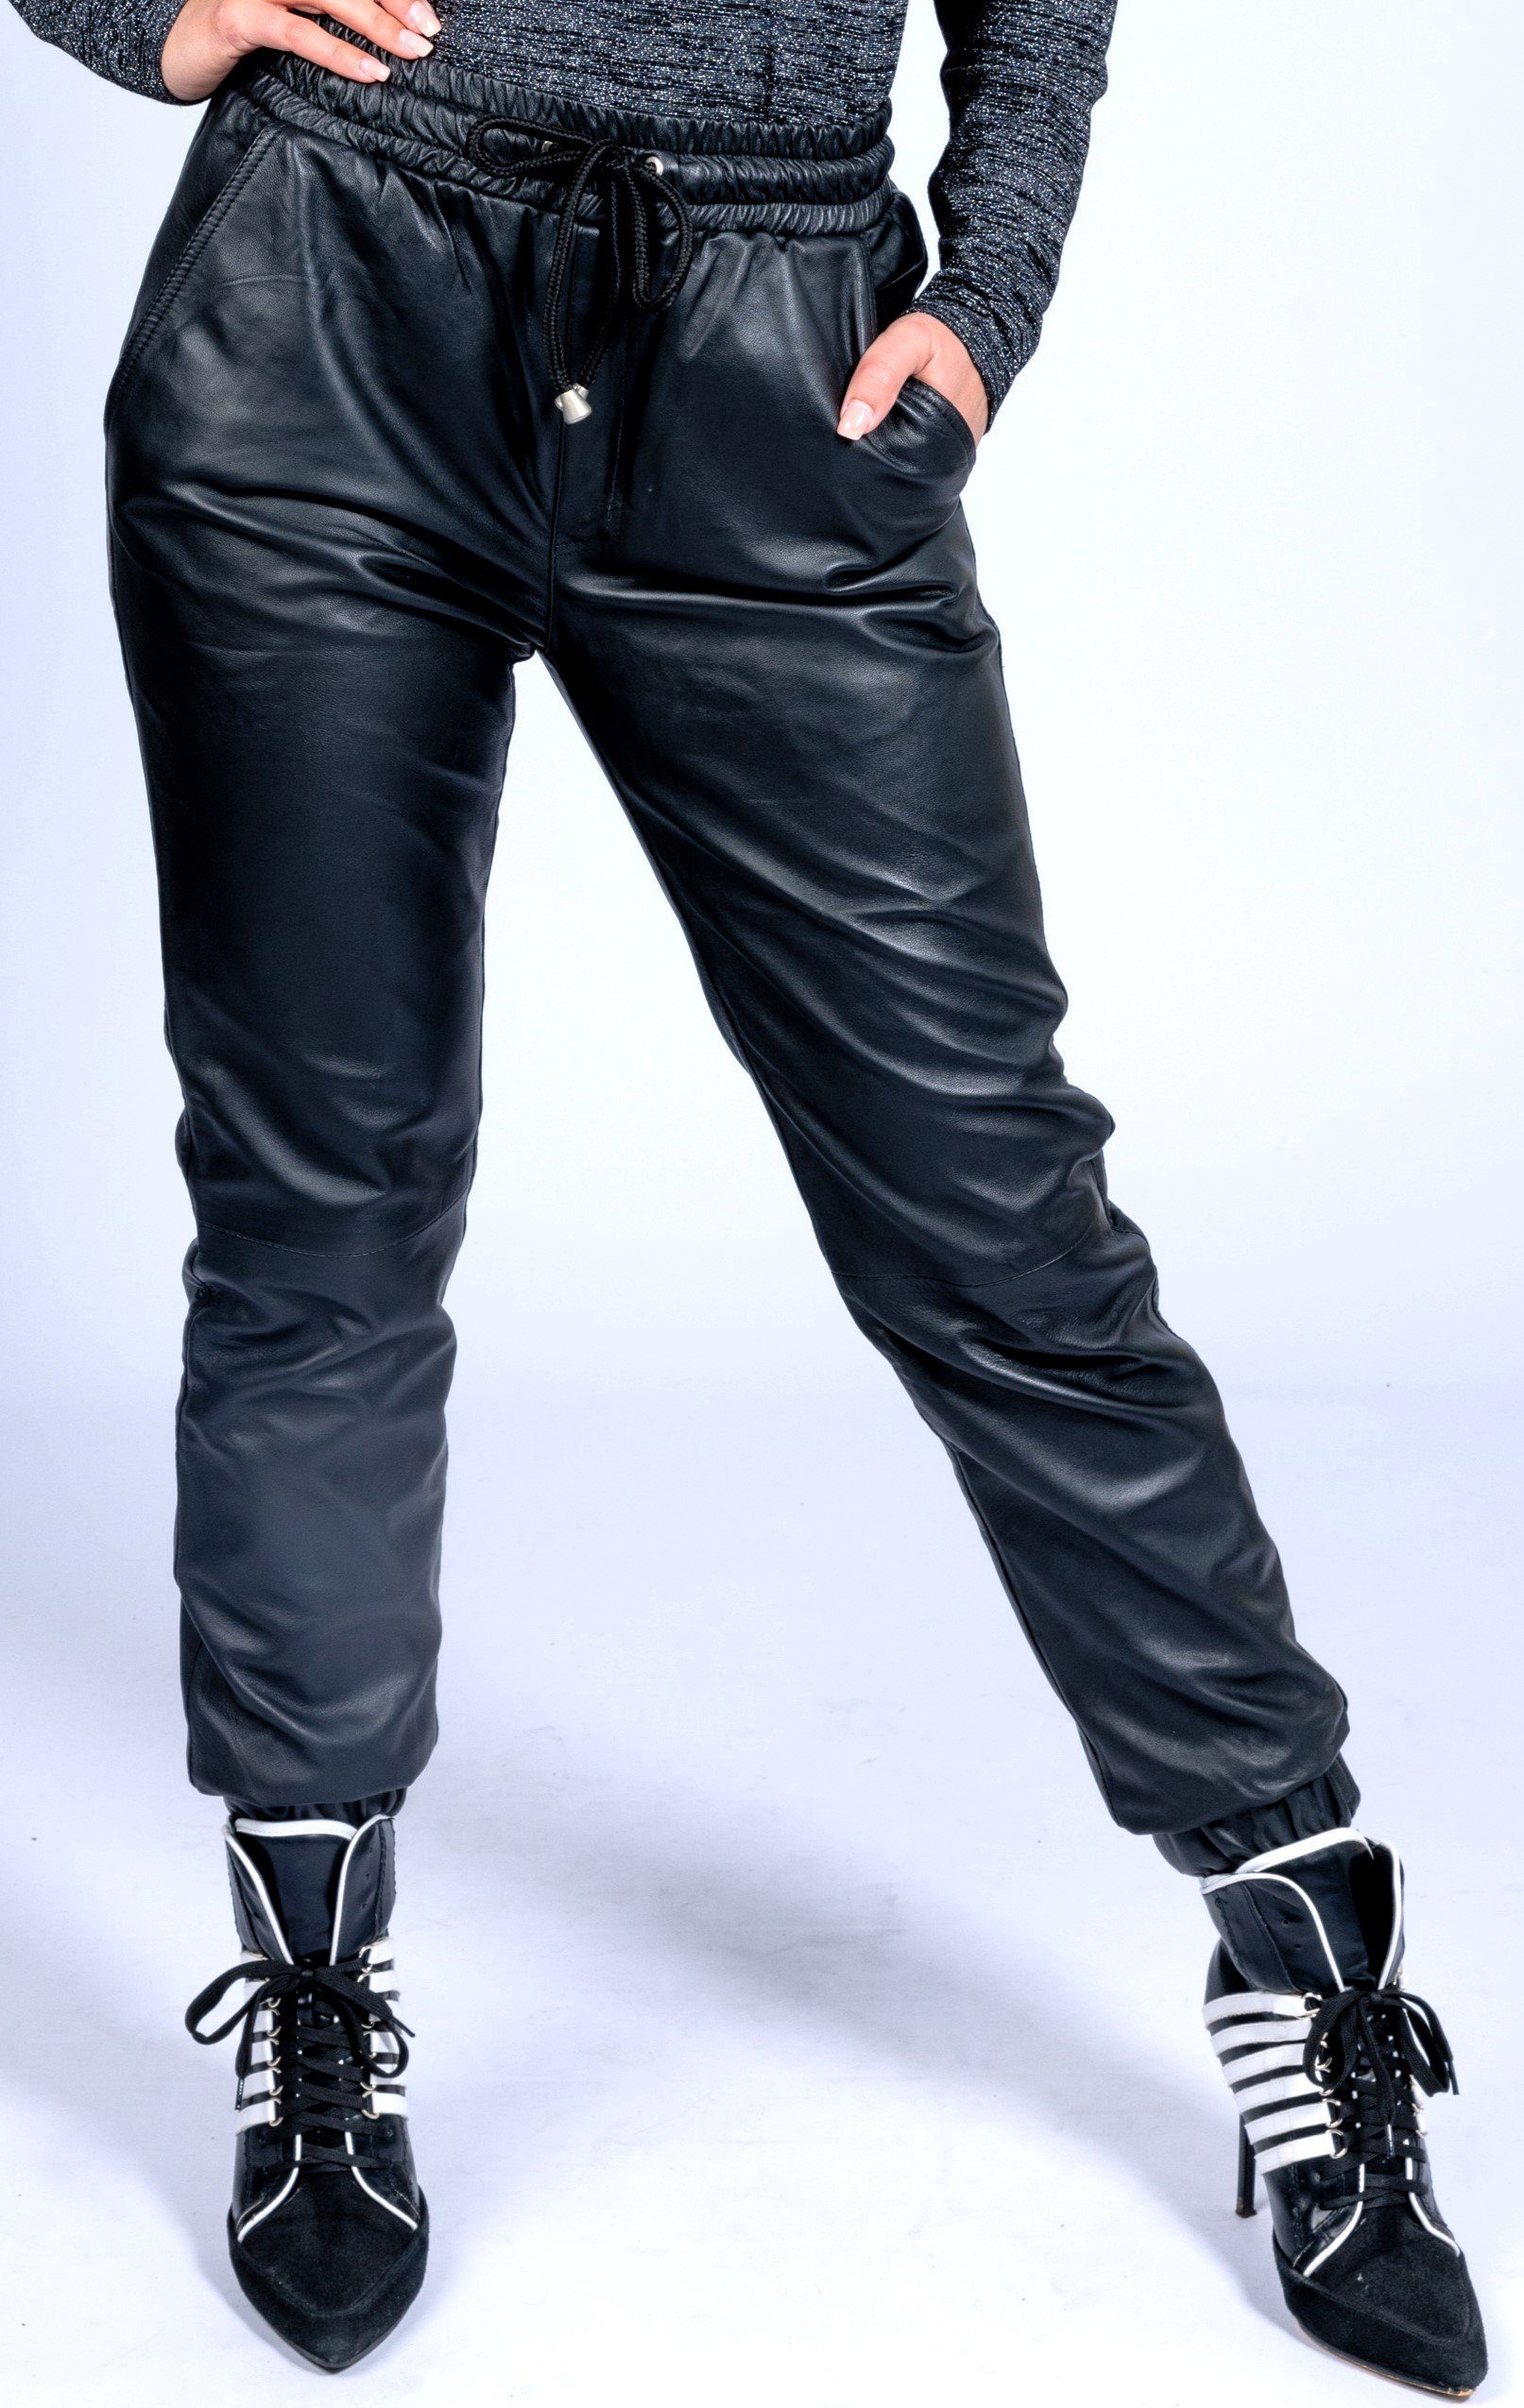 Be Noble Lederhose Classic Damen schwarz Lederhose aus weichem Lammnappa im  legeren Style